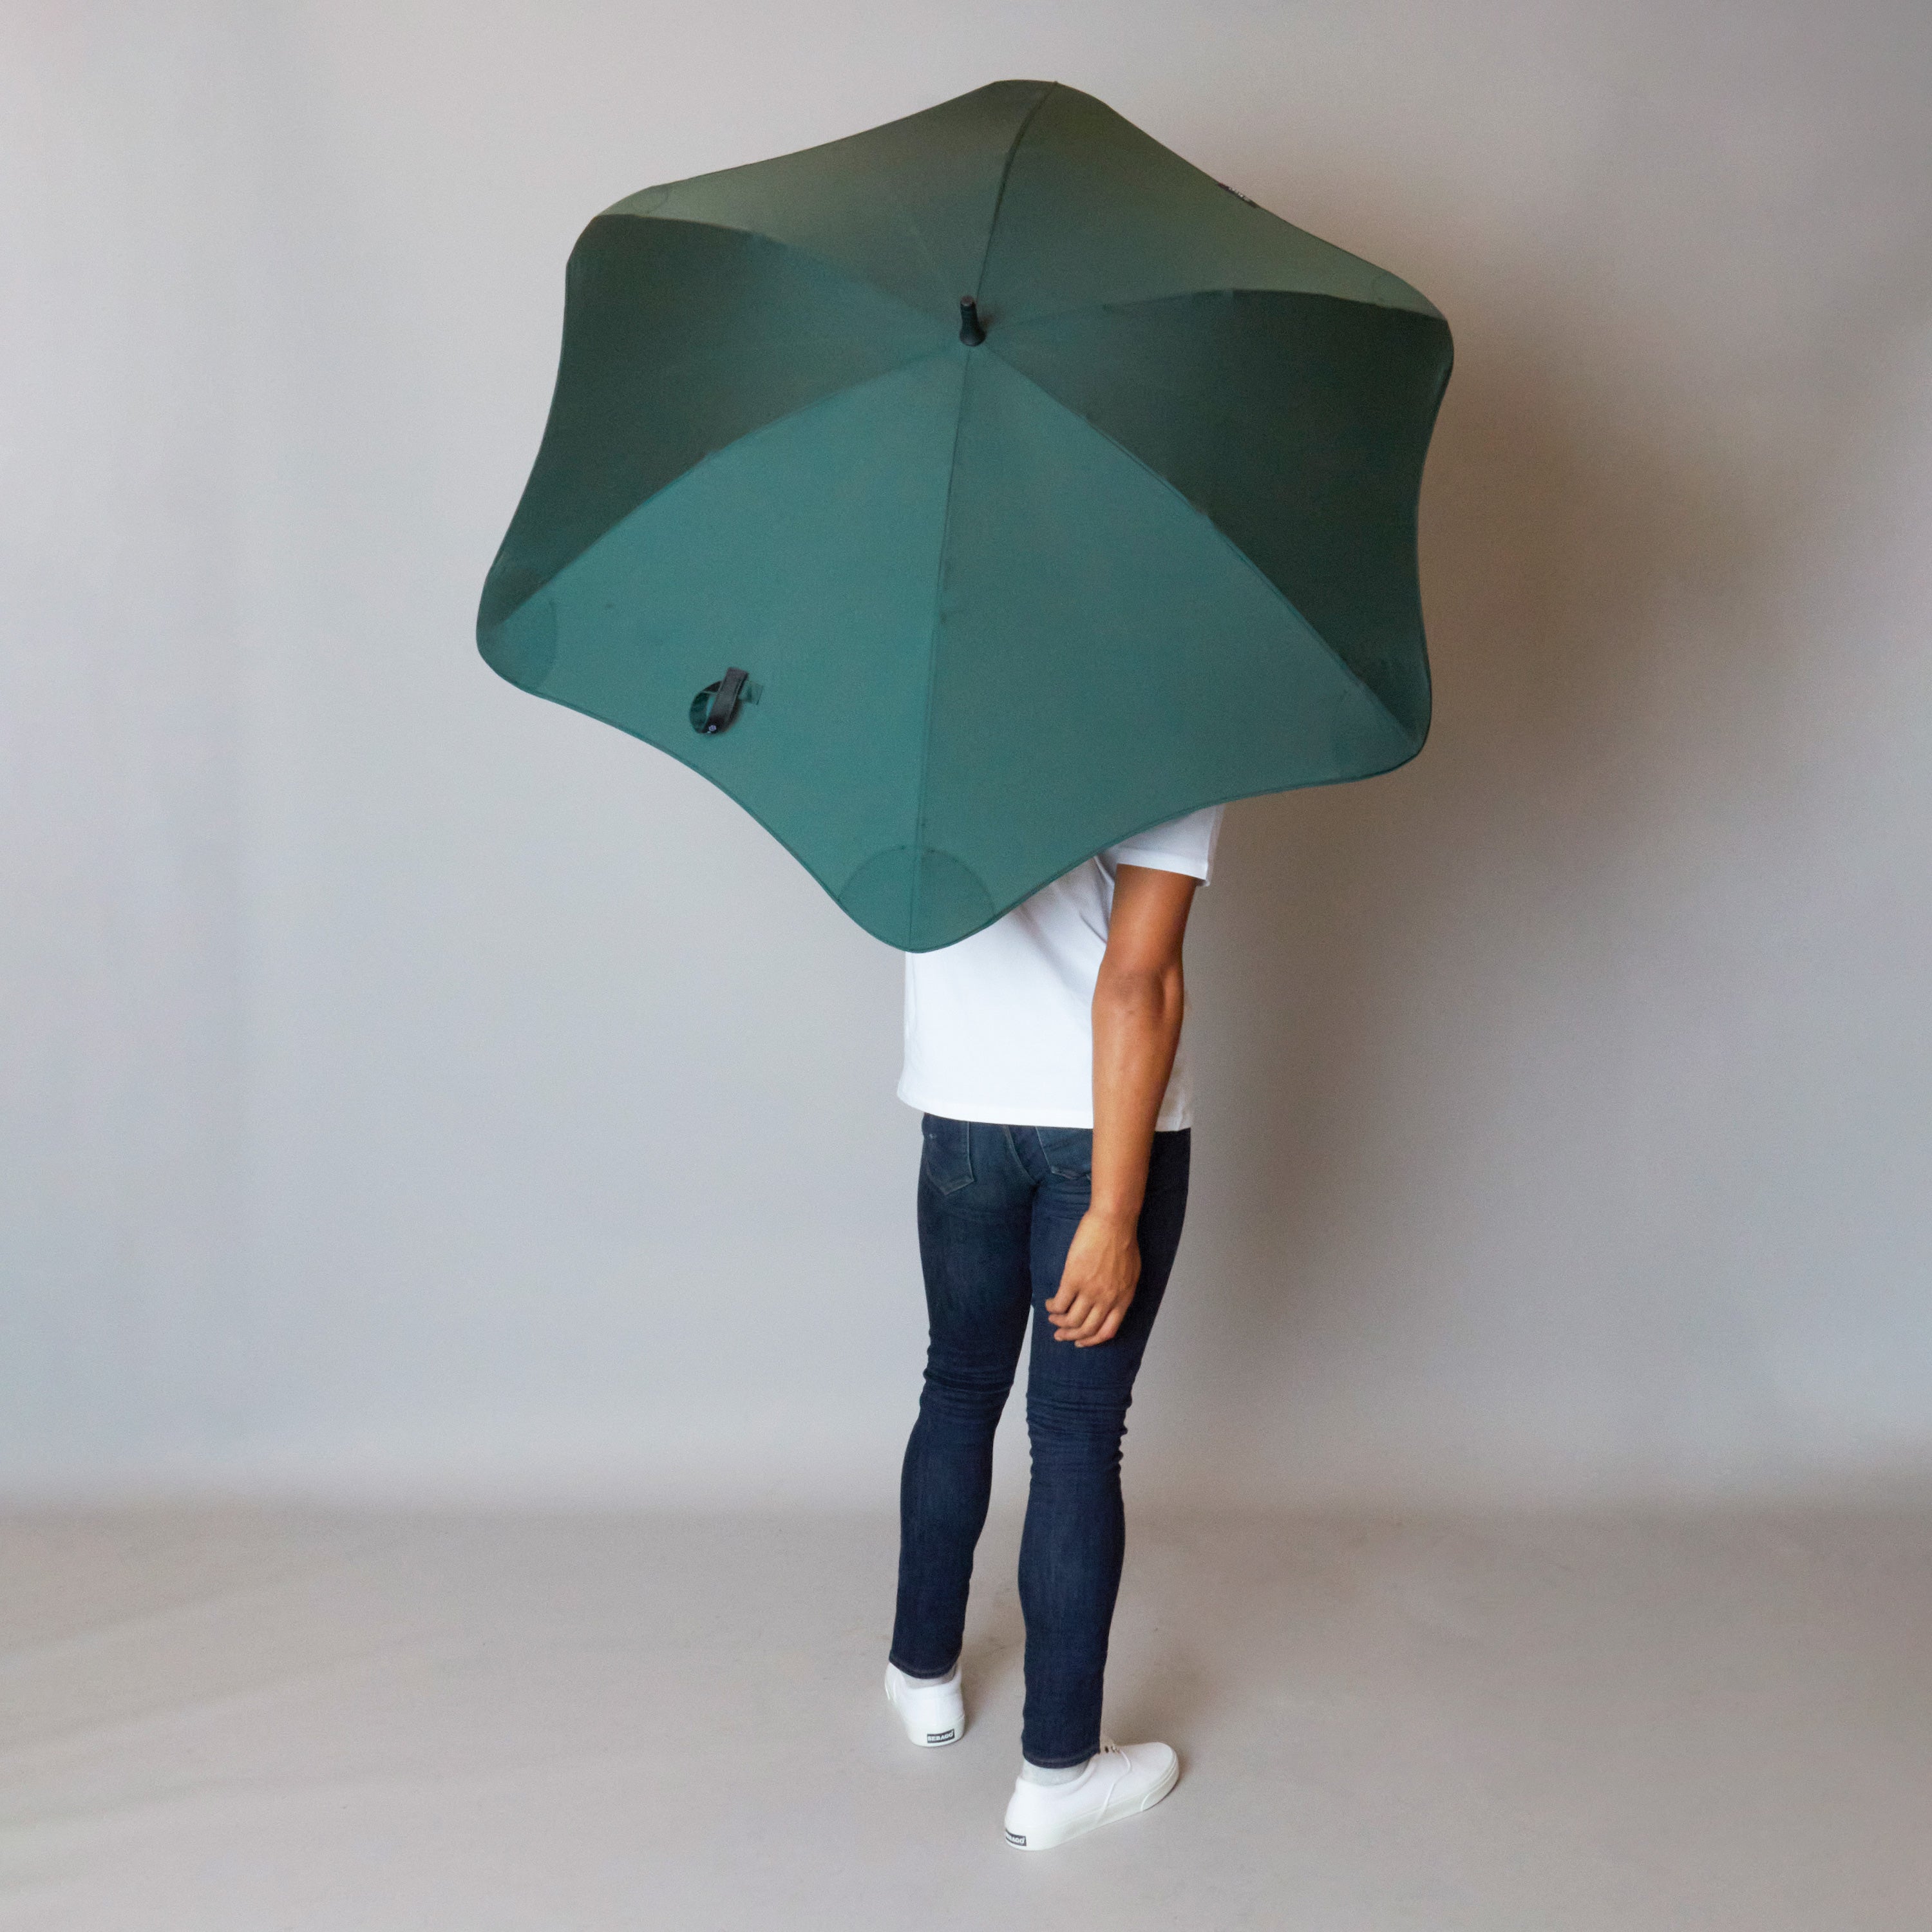 2020 Classic Green Blunt Umbrella Model Back View